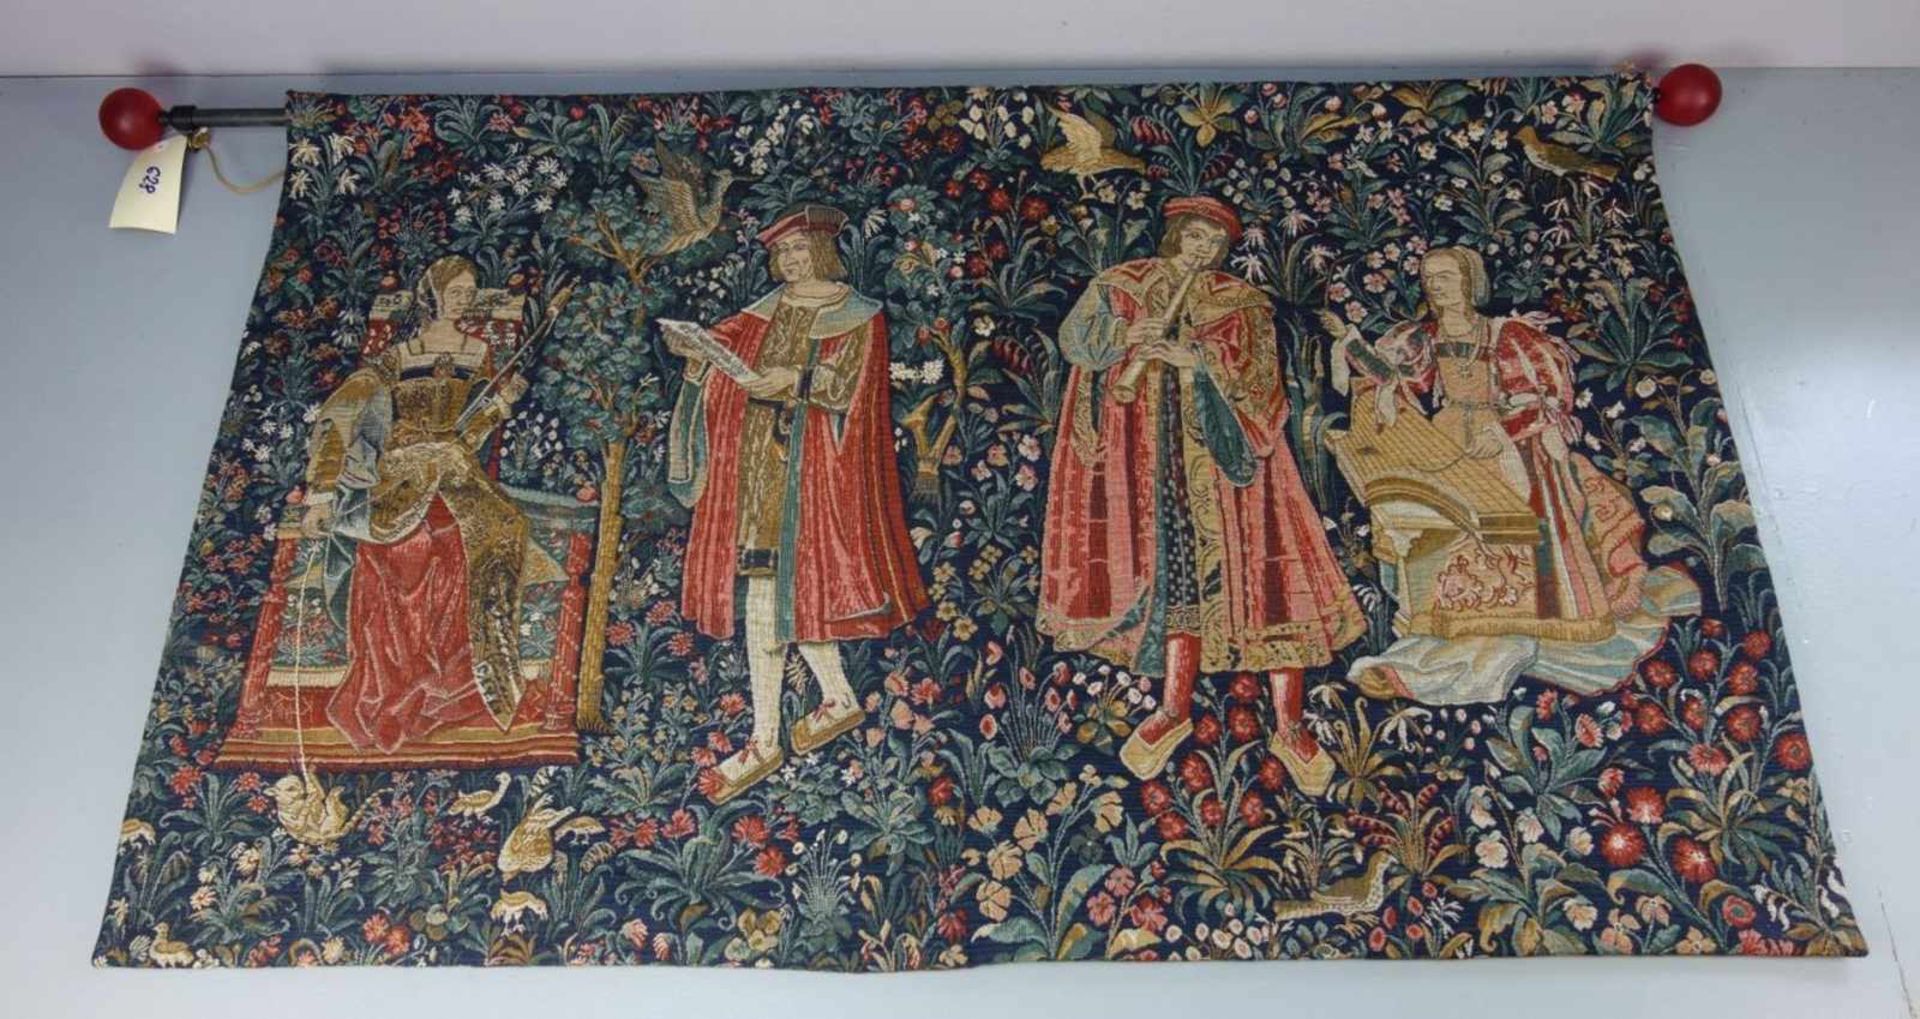 GOBELIN / WANDBEHANG/ gobelin tapestry, nach historischem Vorbild gearbeitet. Zwei musizierende